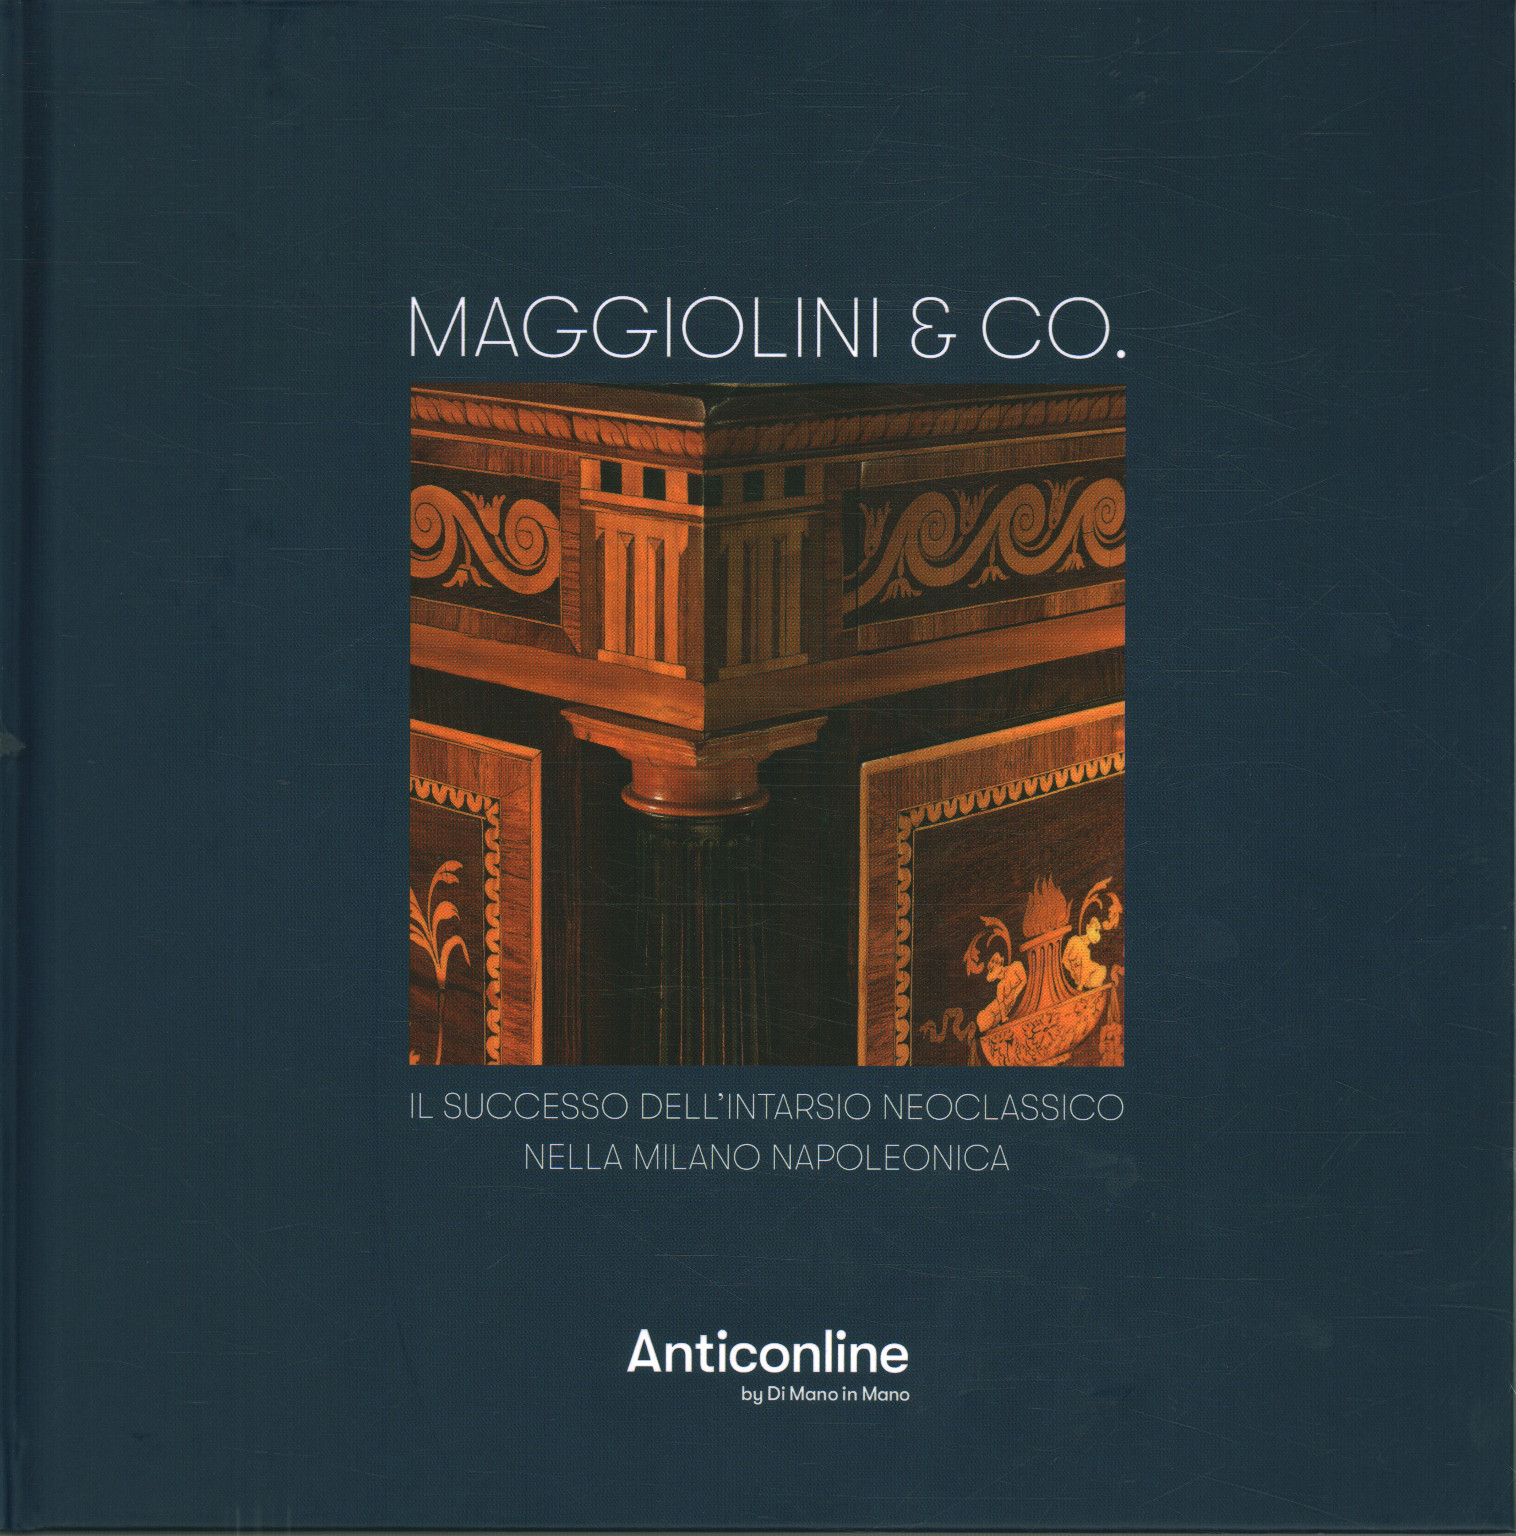 Maggiolini & CO. Der Erfolg des neoklassizistischen Inlays im napoleonischen Mailand